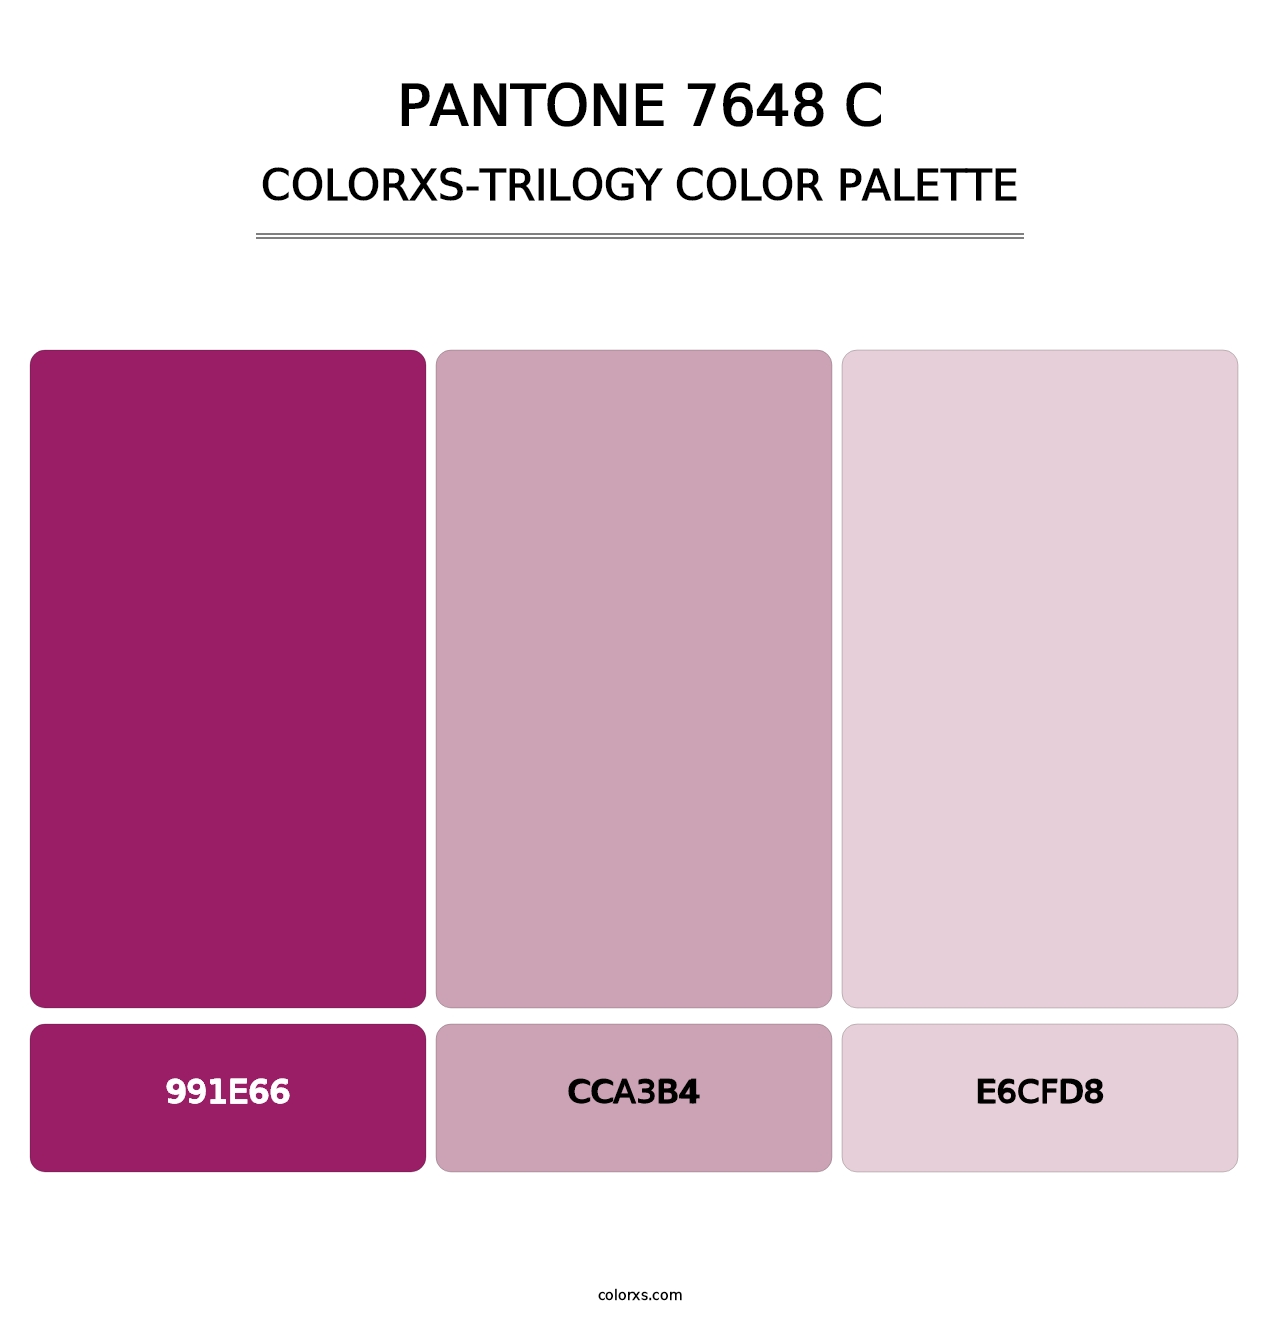 PANTONE 7648 C - Colorxs Trilogy Palette